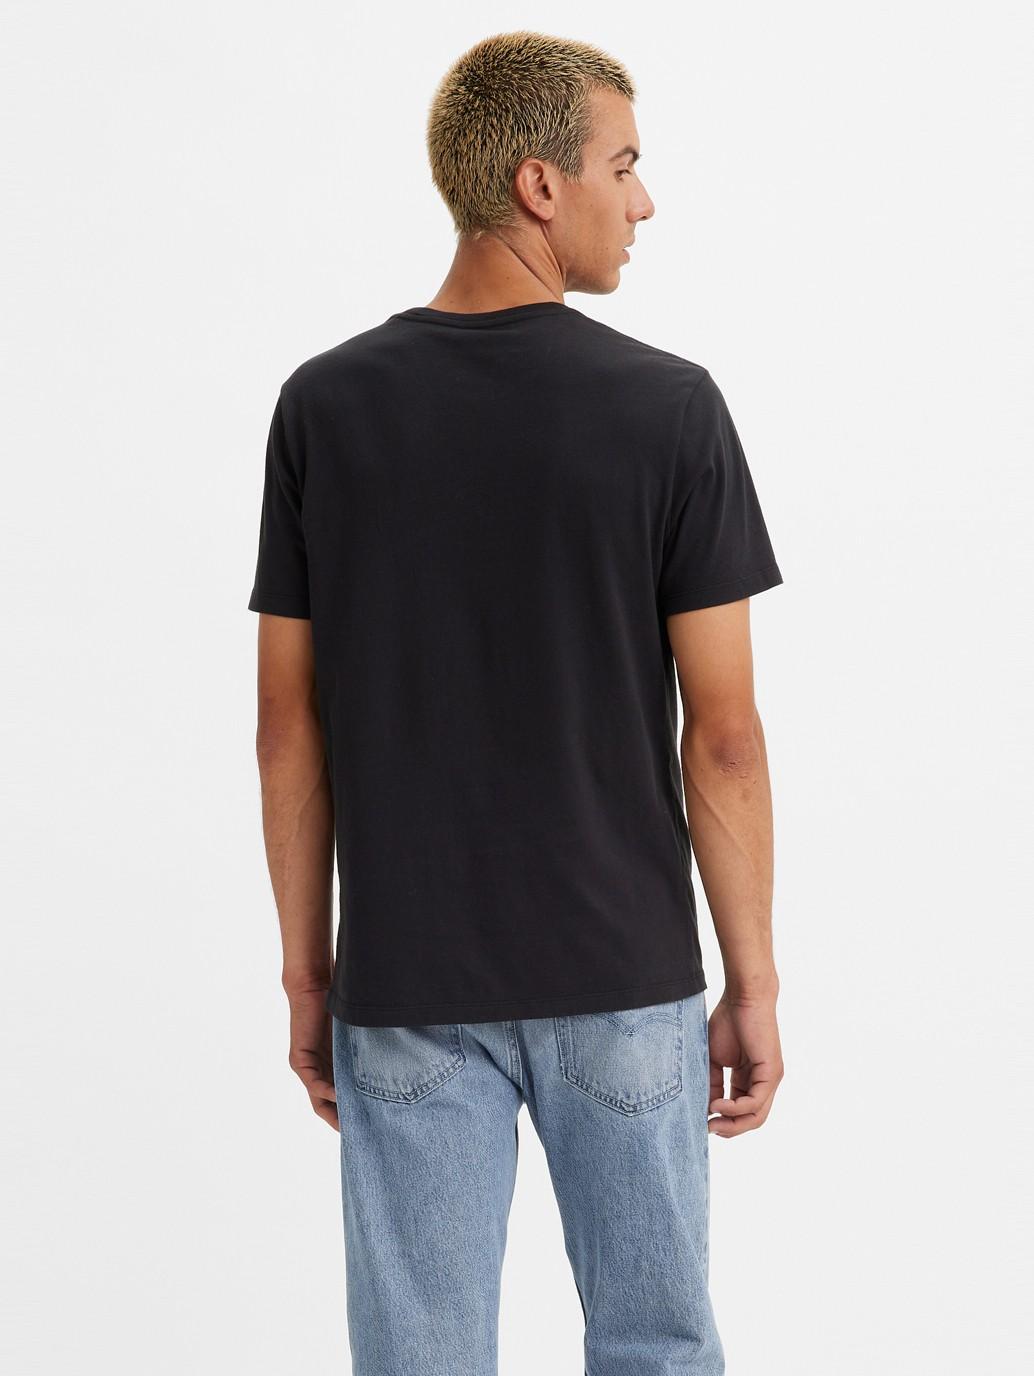 Buy Levi's® Men's Graphic Crewneck T-Shirt | Levi’s® Official Online ...